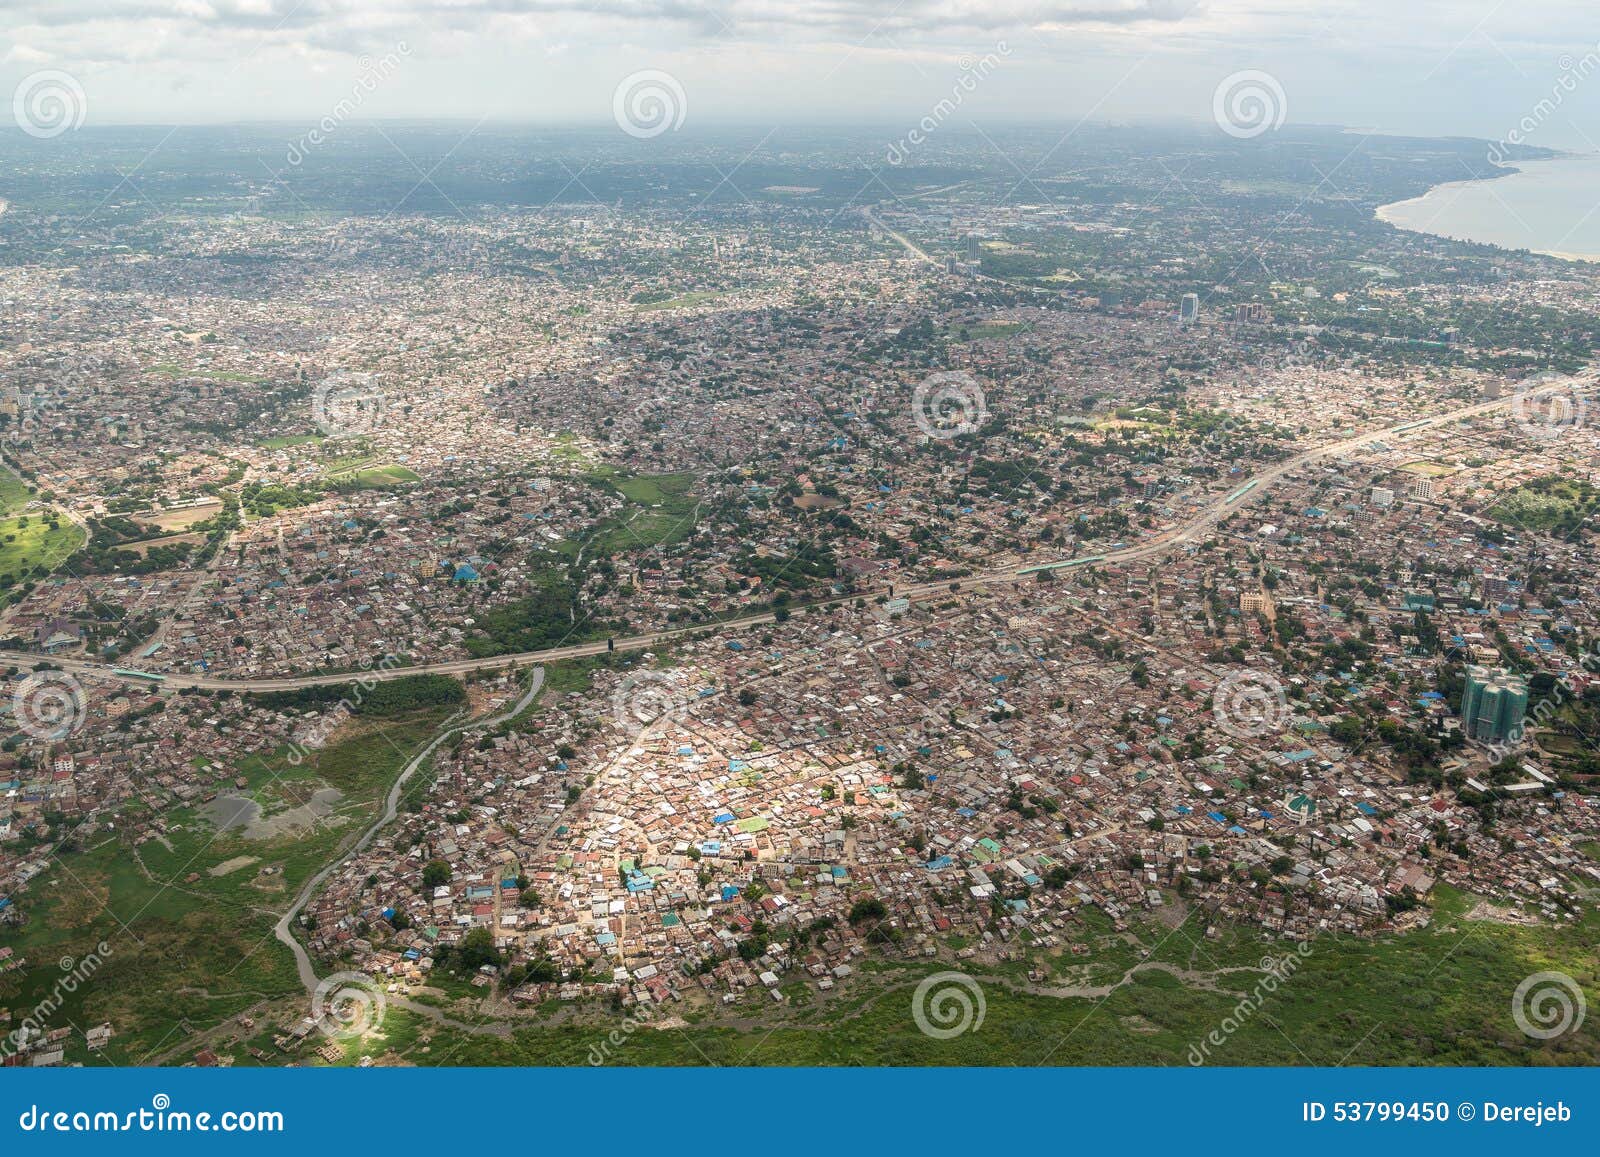 aerial view of dar es salaam